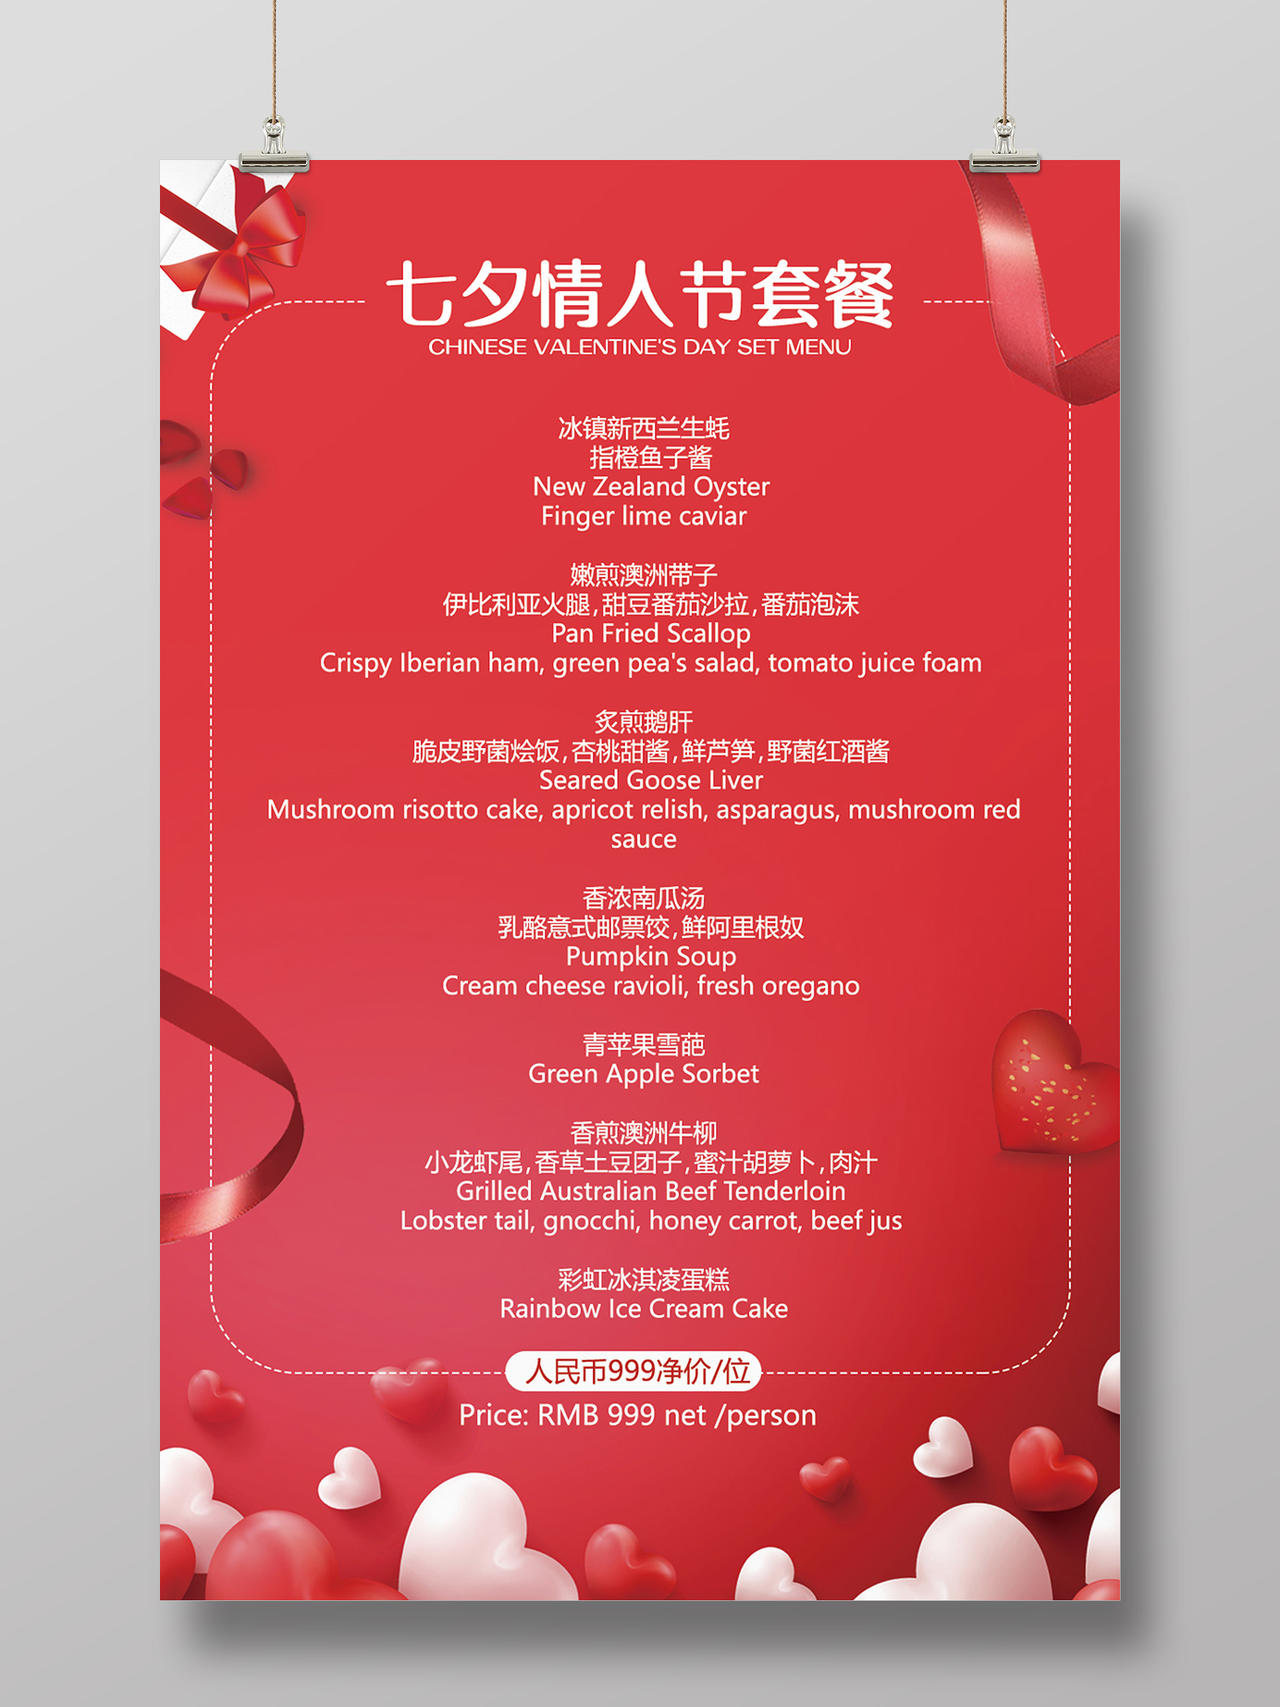 红色气球背景七夕套餐菜单模板七夕菜单